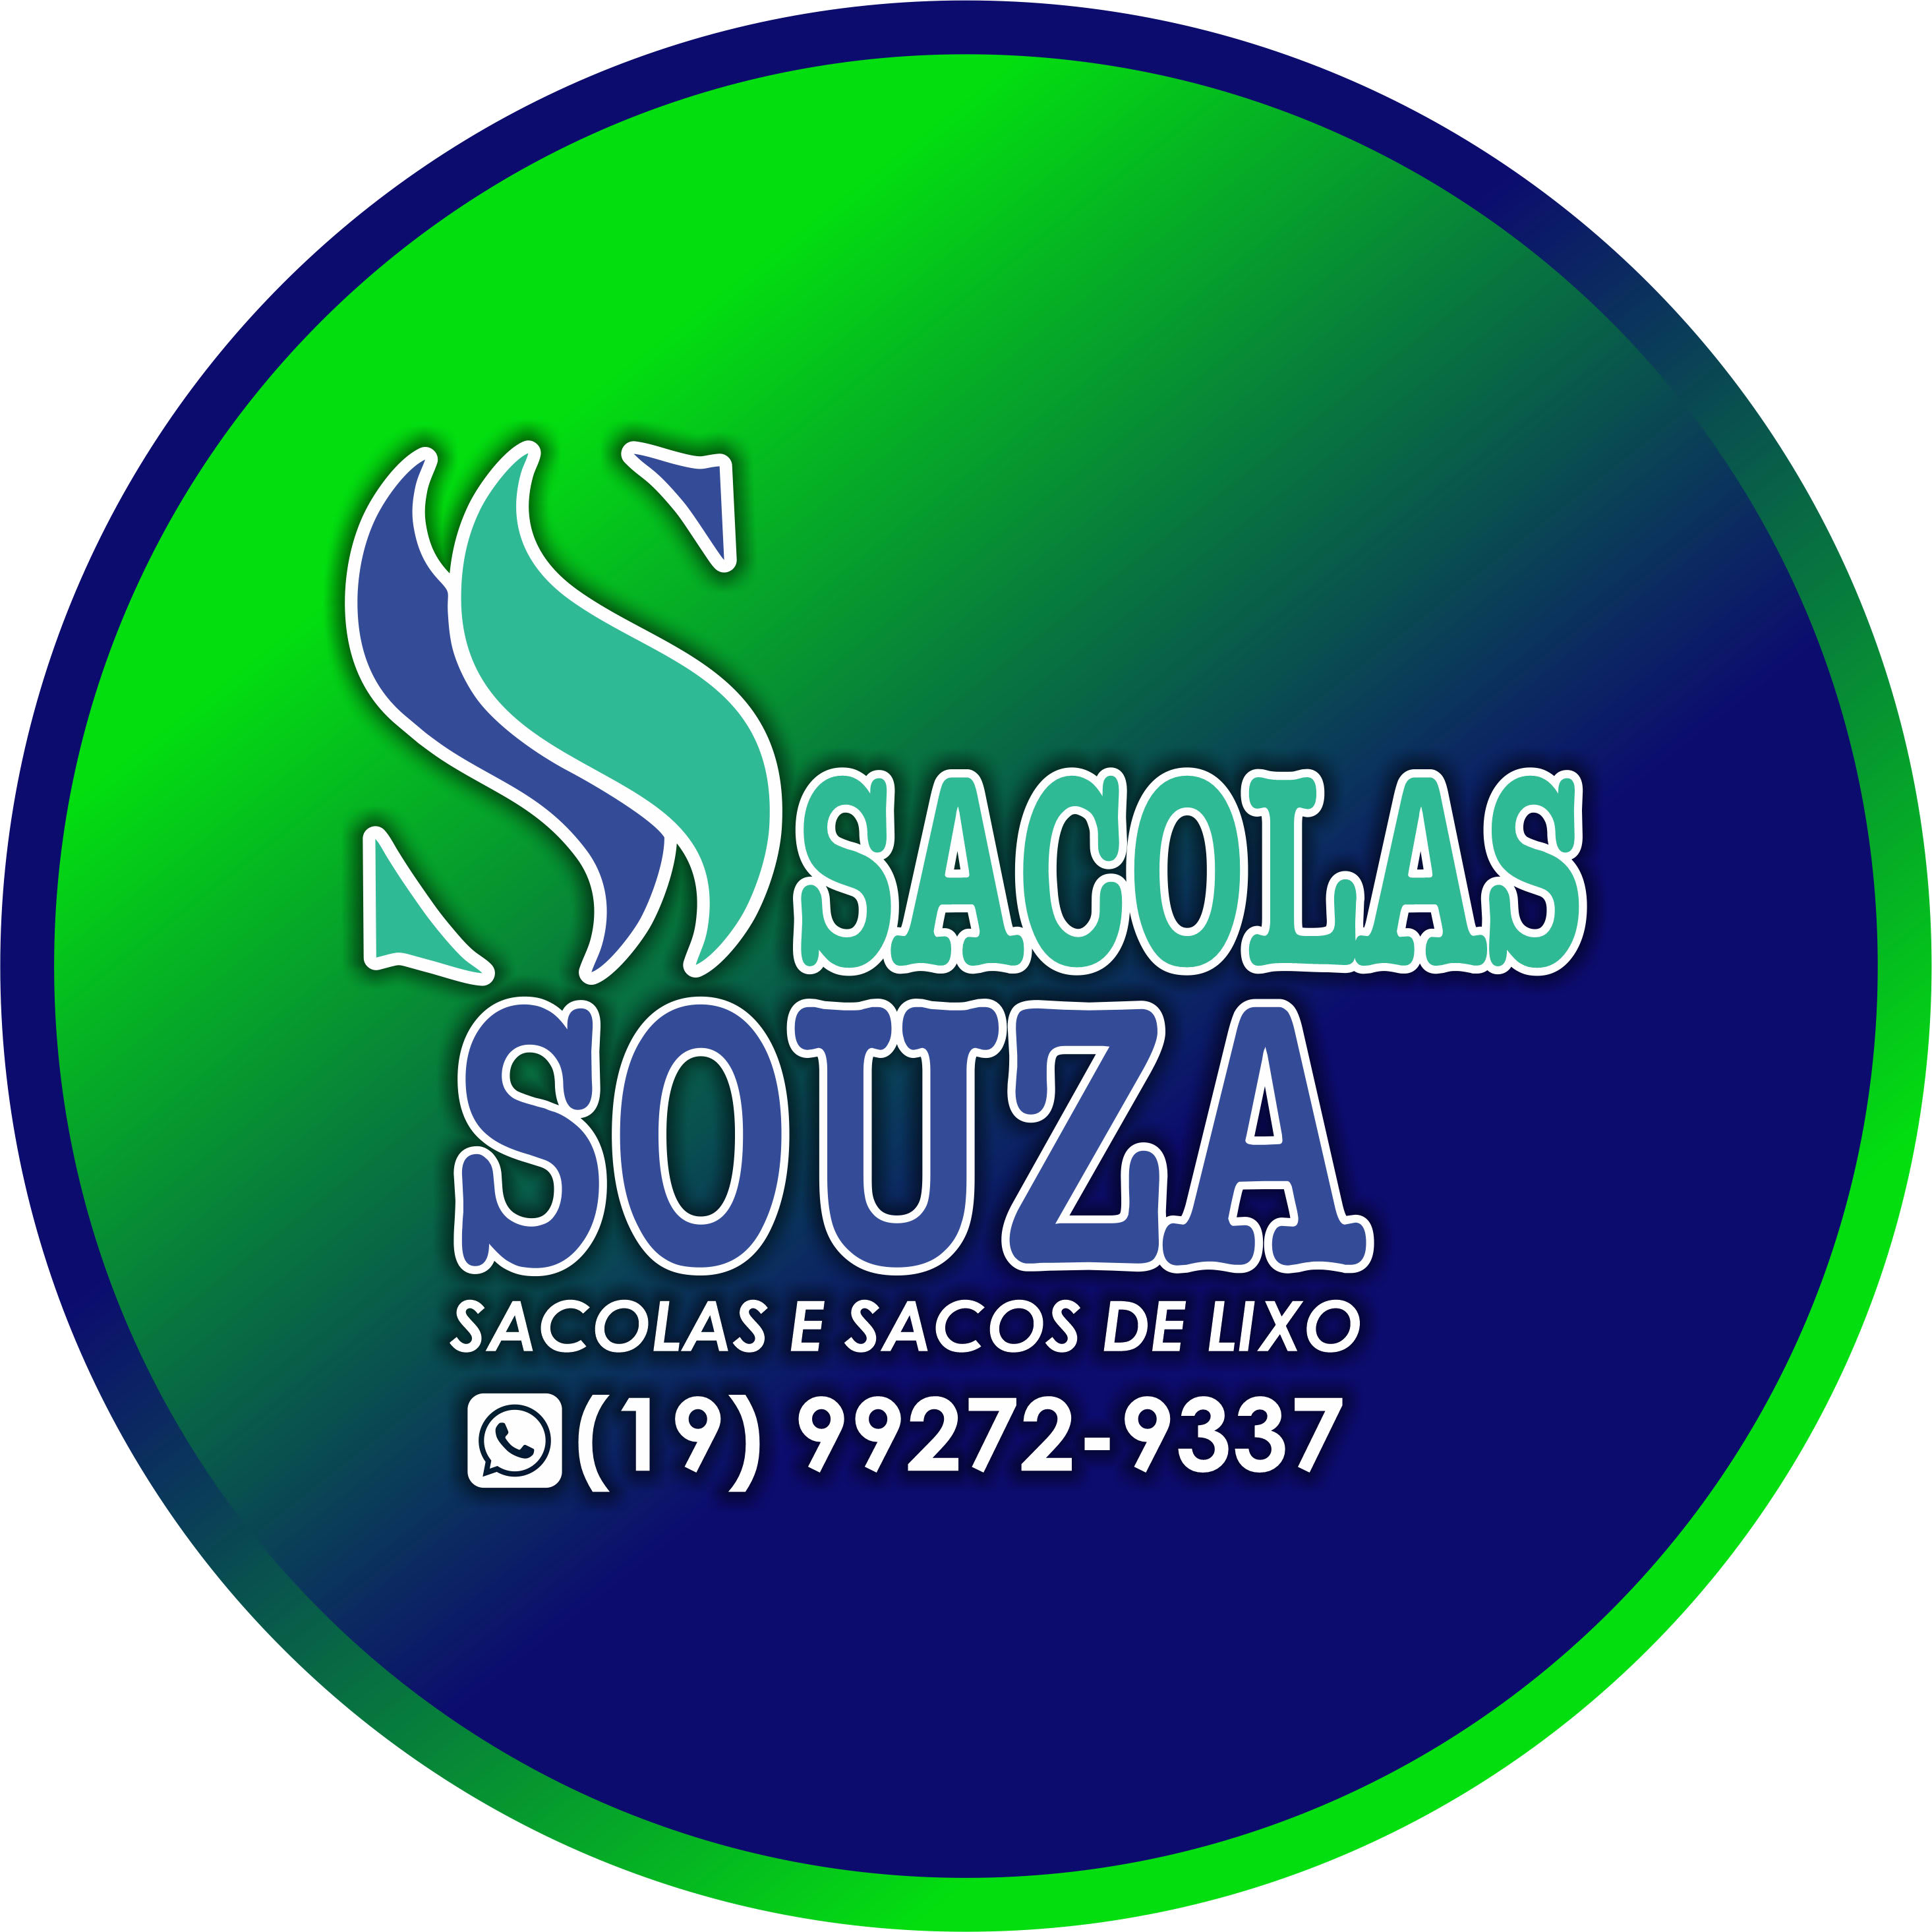 Sacolas Souza